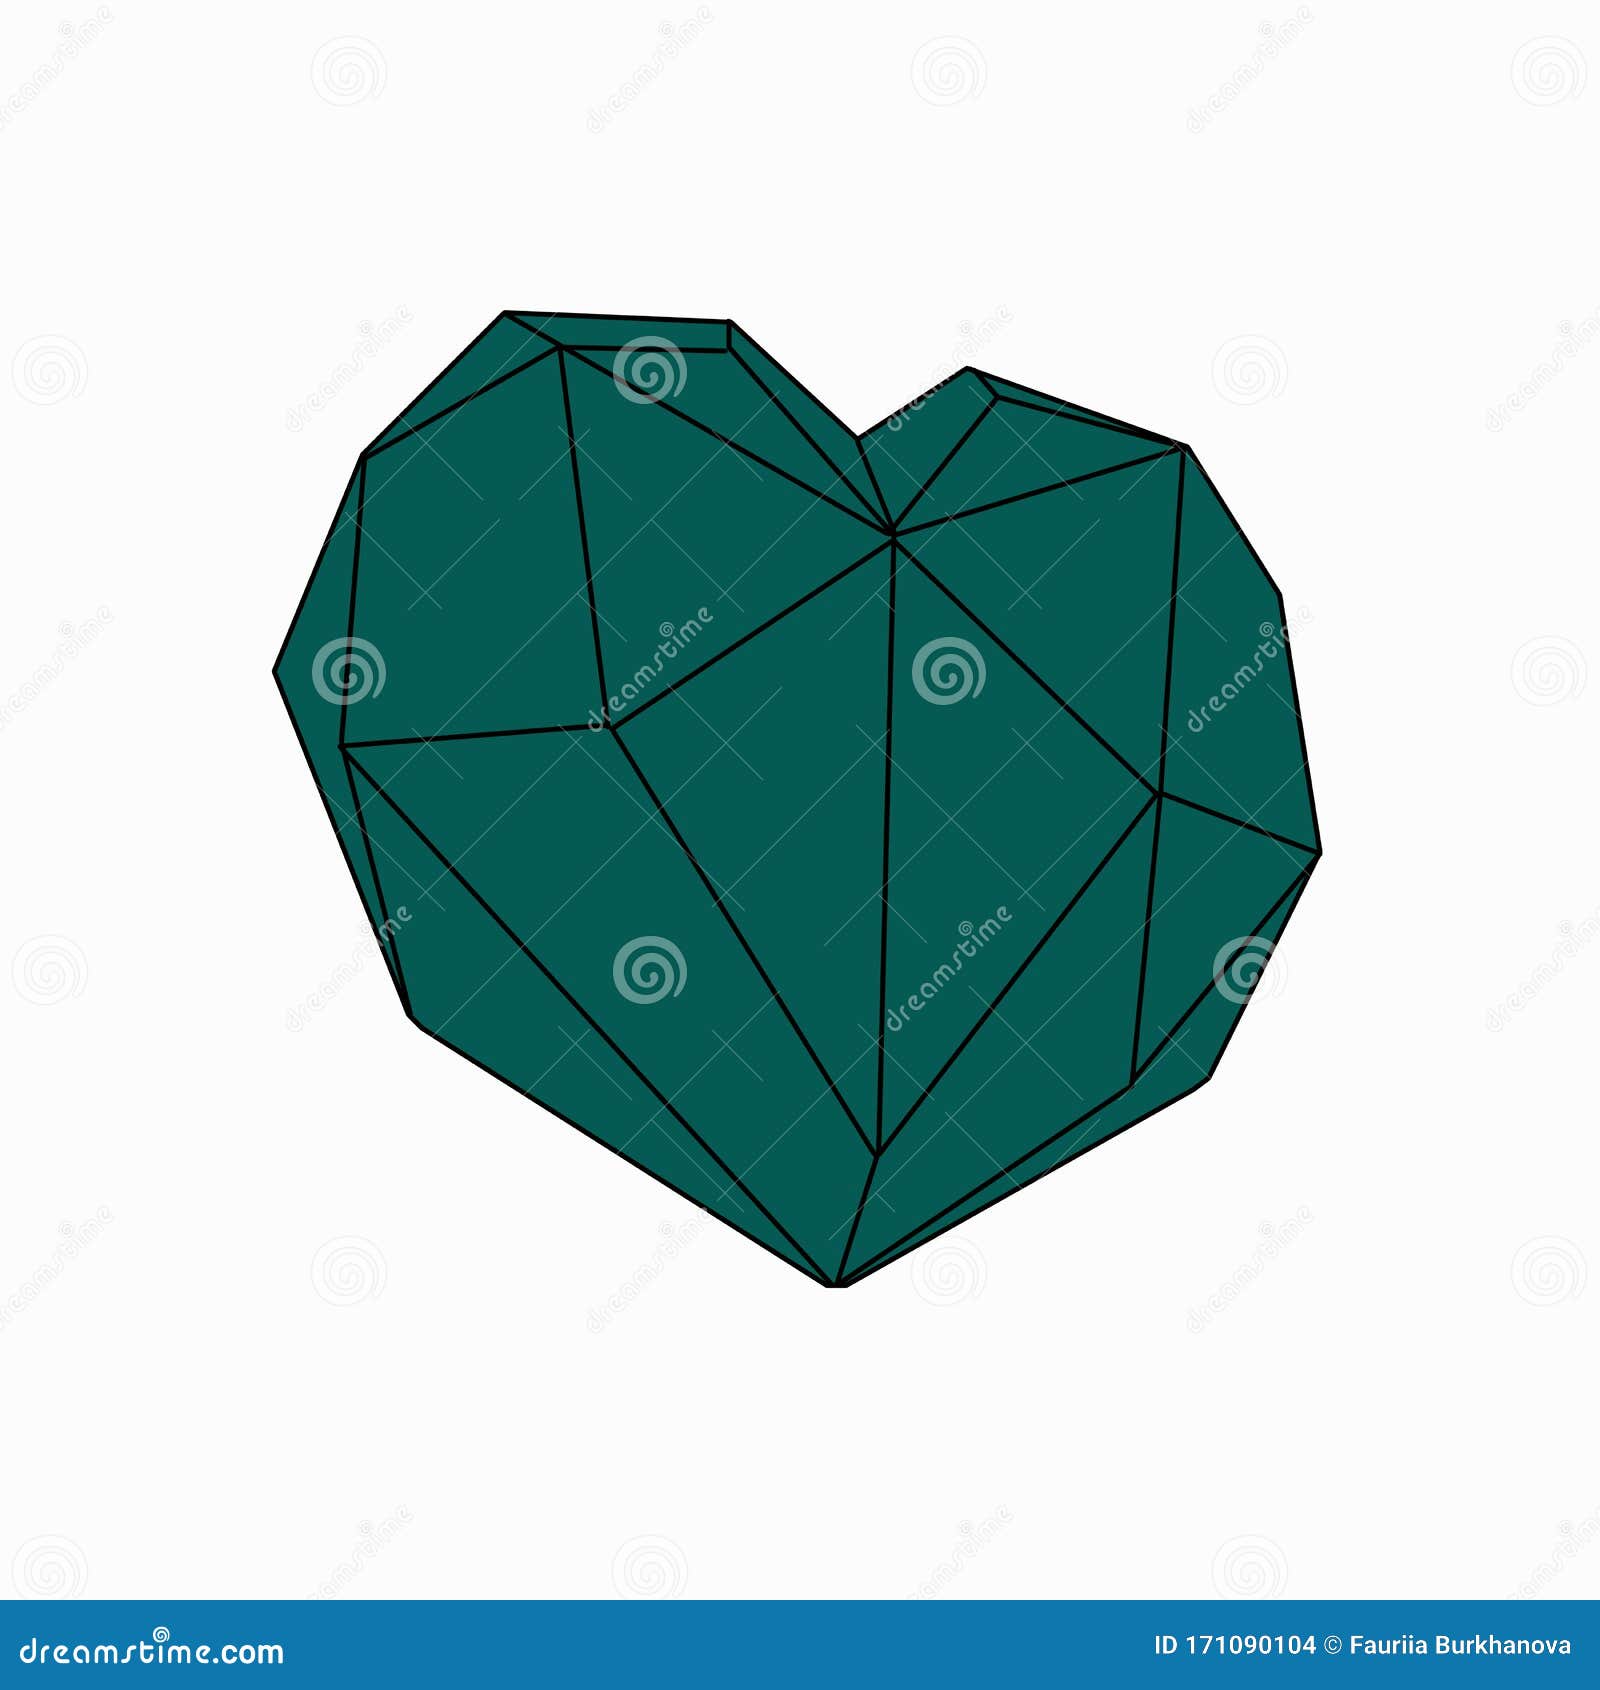 emerald color geometrÃÂ±c heart on a whÃÂ±te background